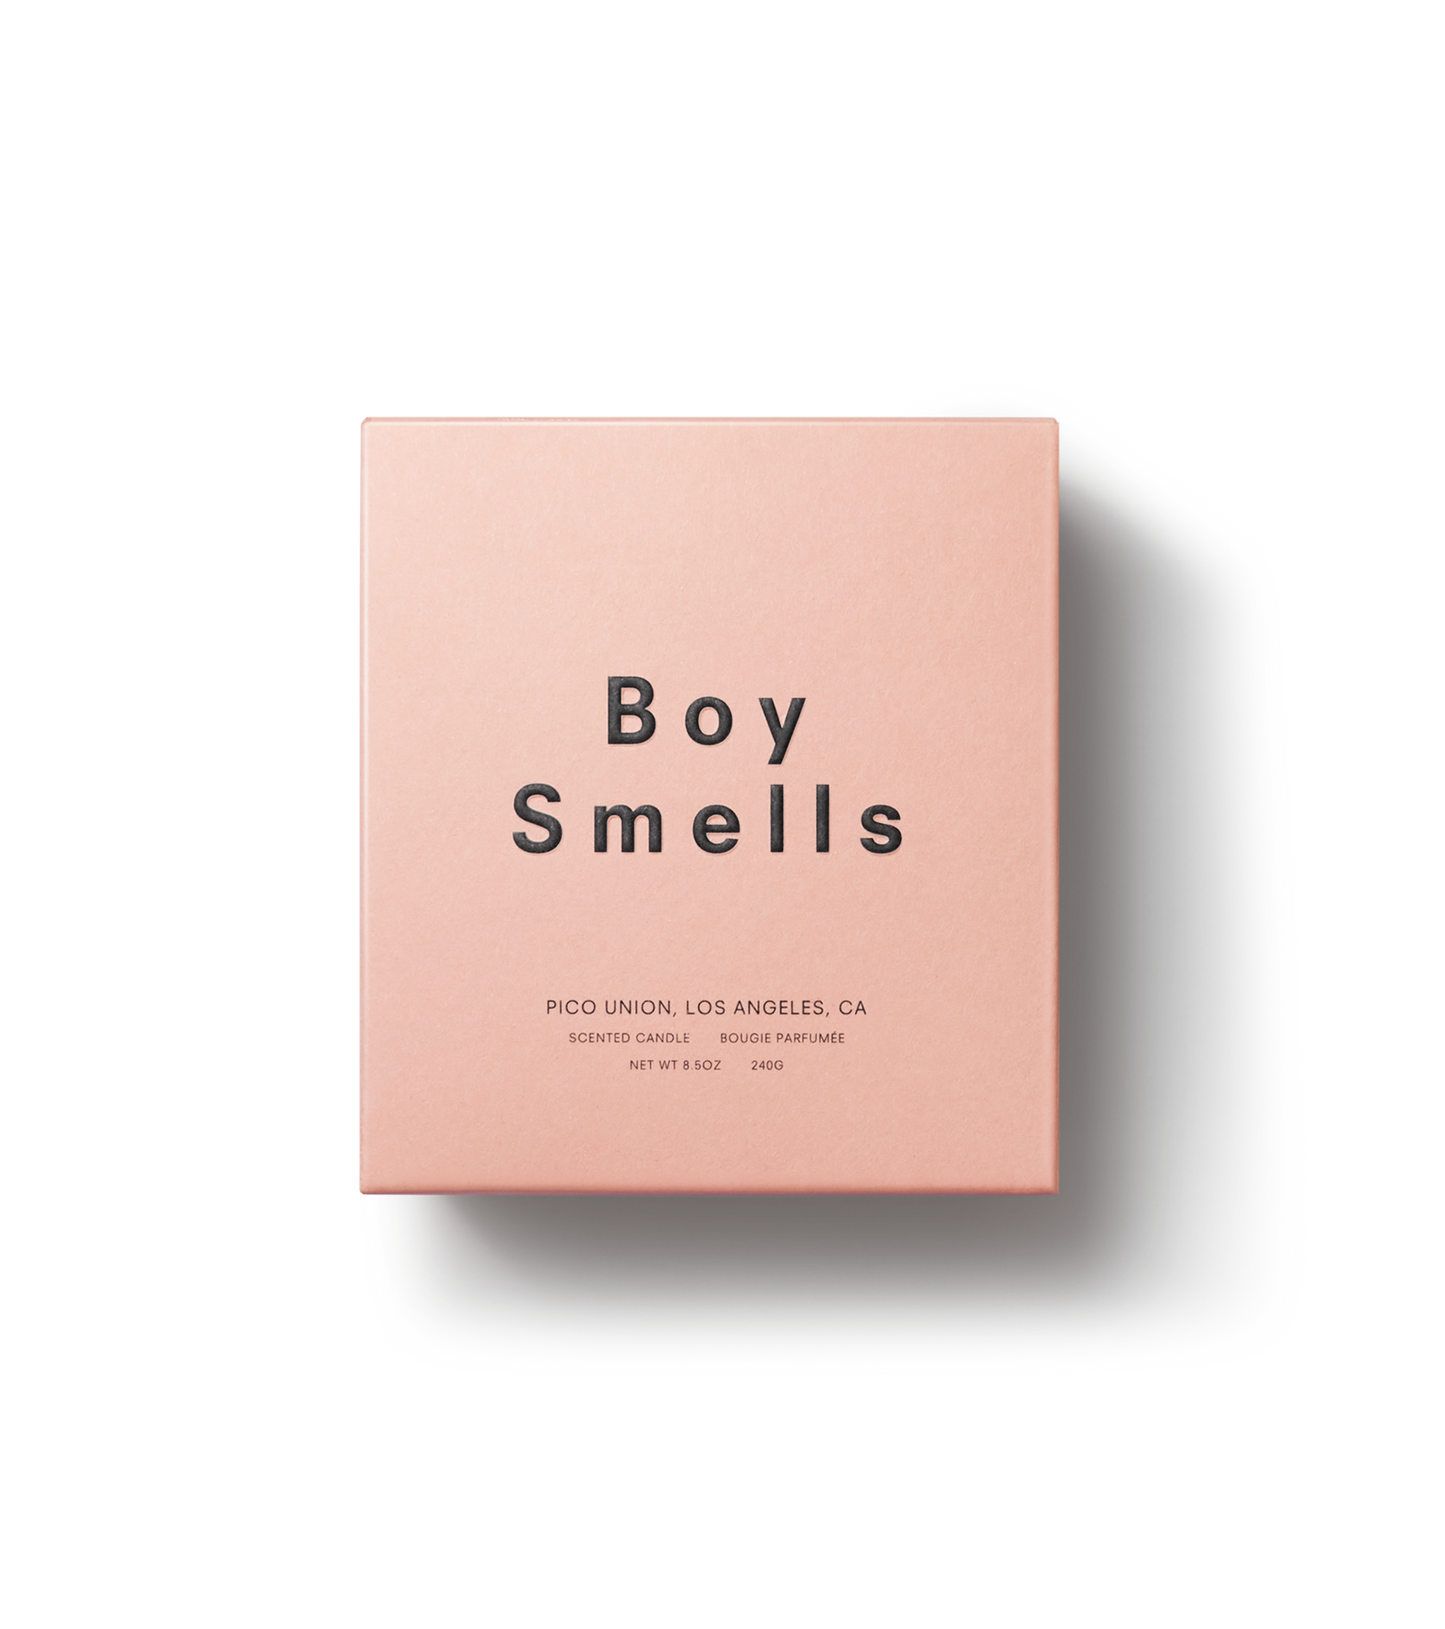 Boy Smells - Kush